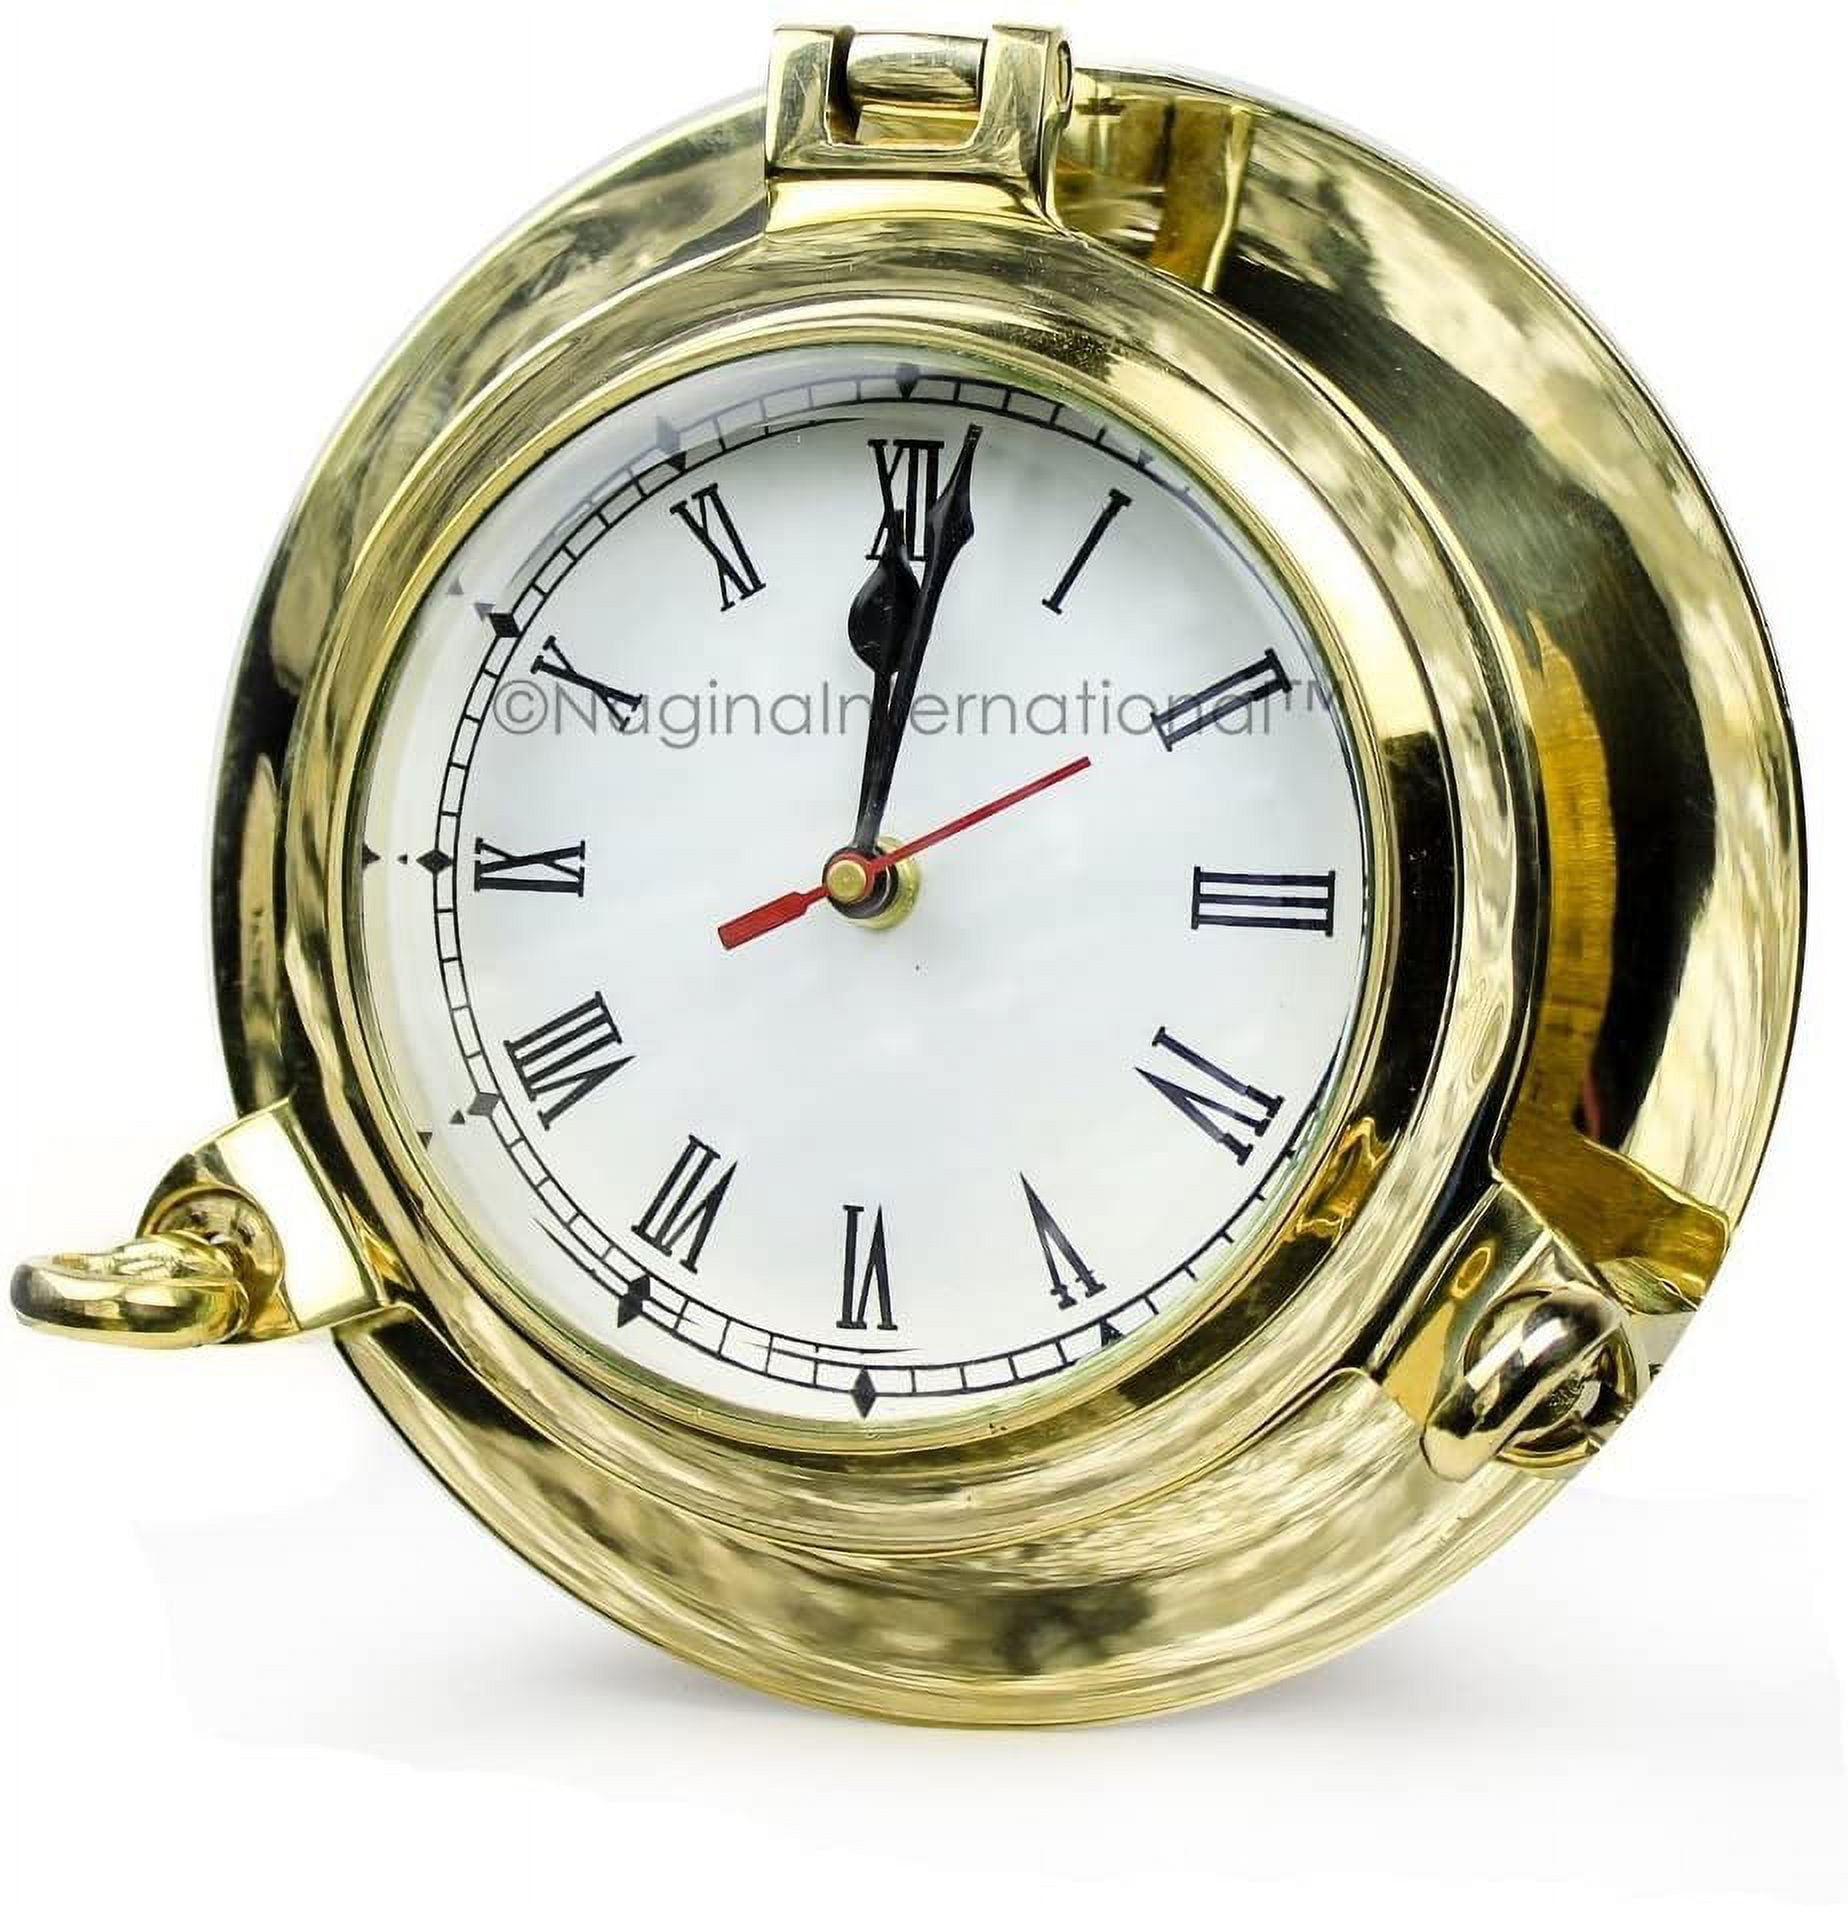 Nagina International Nautical Boat's Porthole Time's Clock